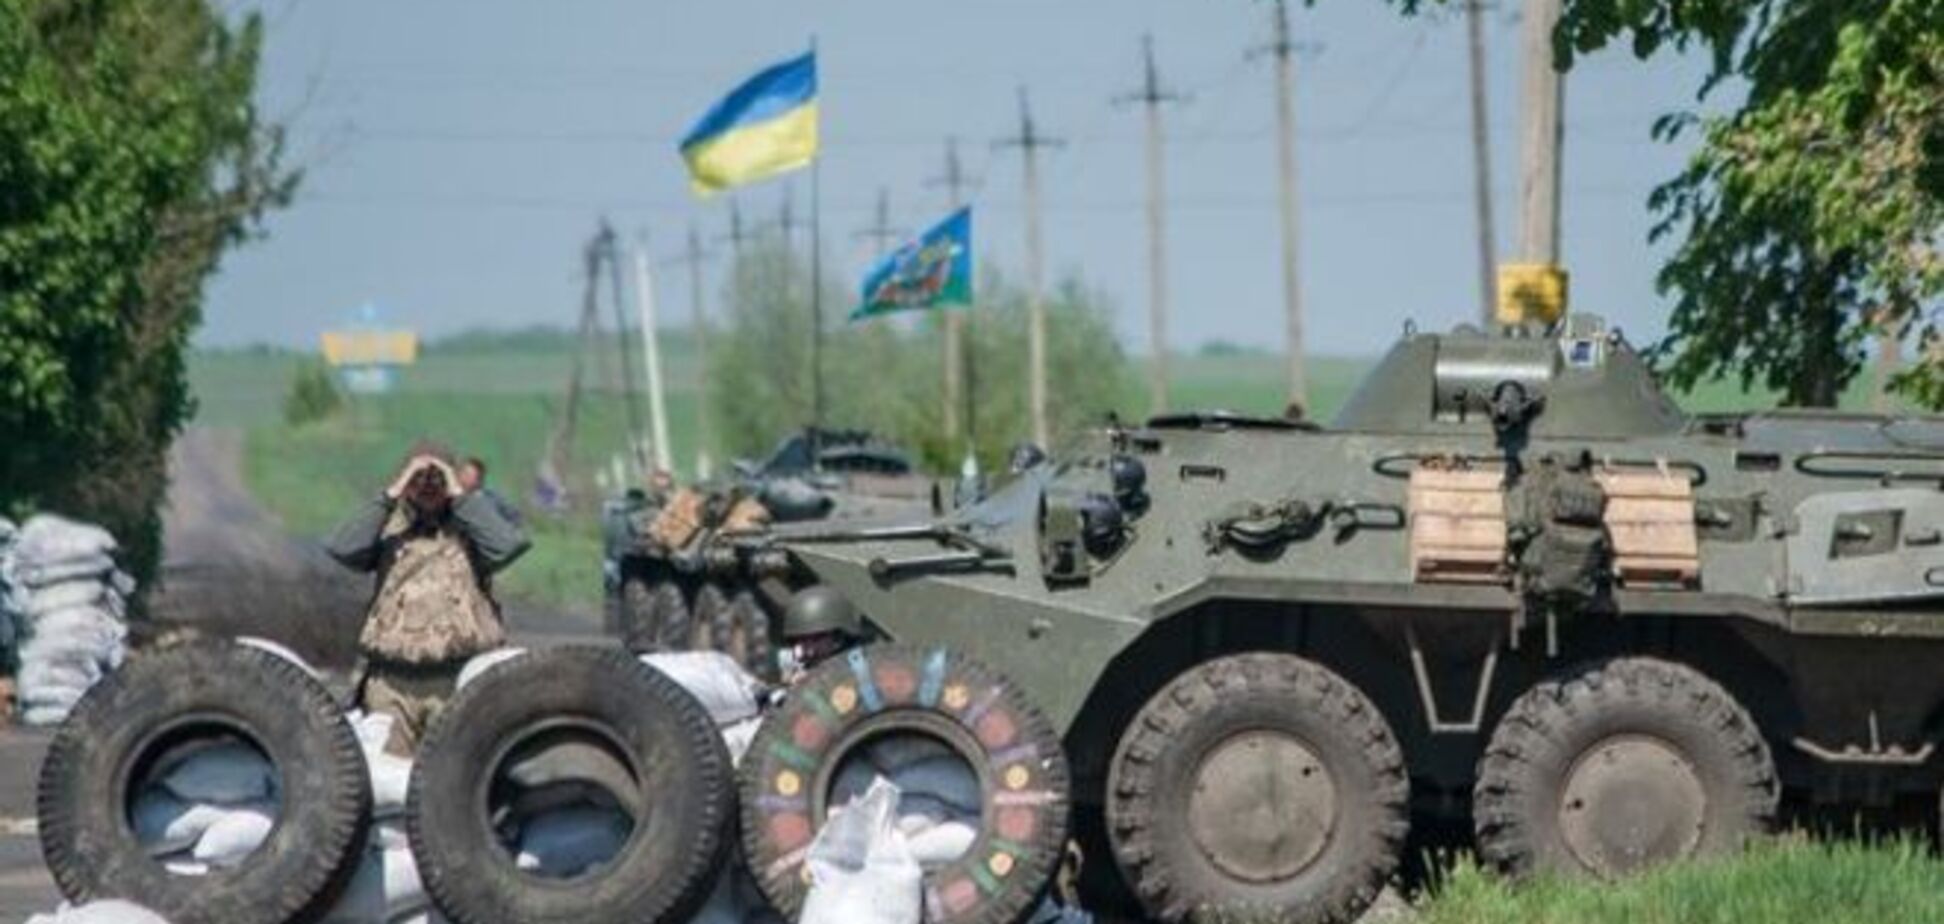 Армія РФ в п'яти кілометрах від України розмістила 12 танків, 52 БТРа і 4З 'Оси'